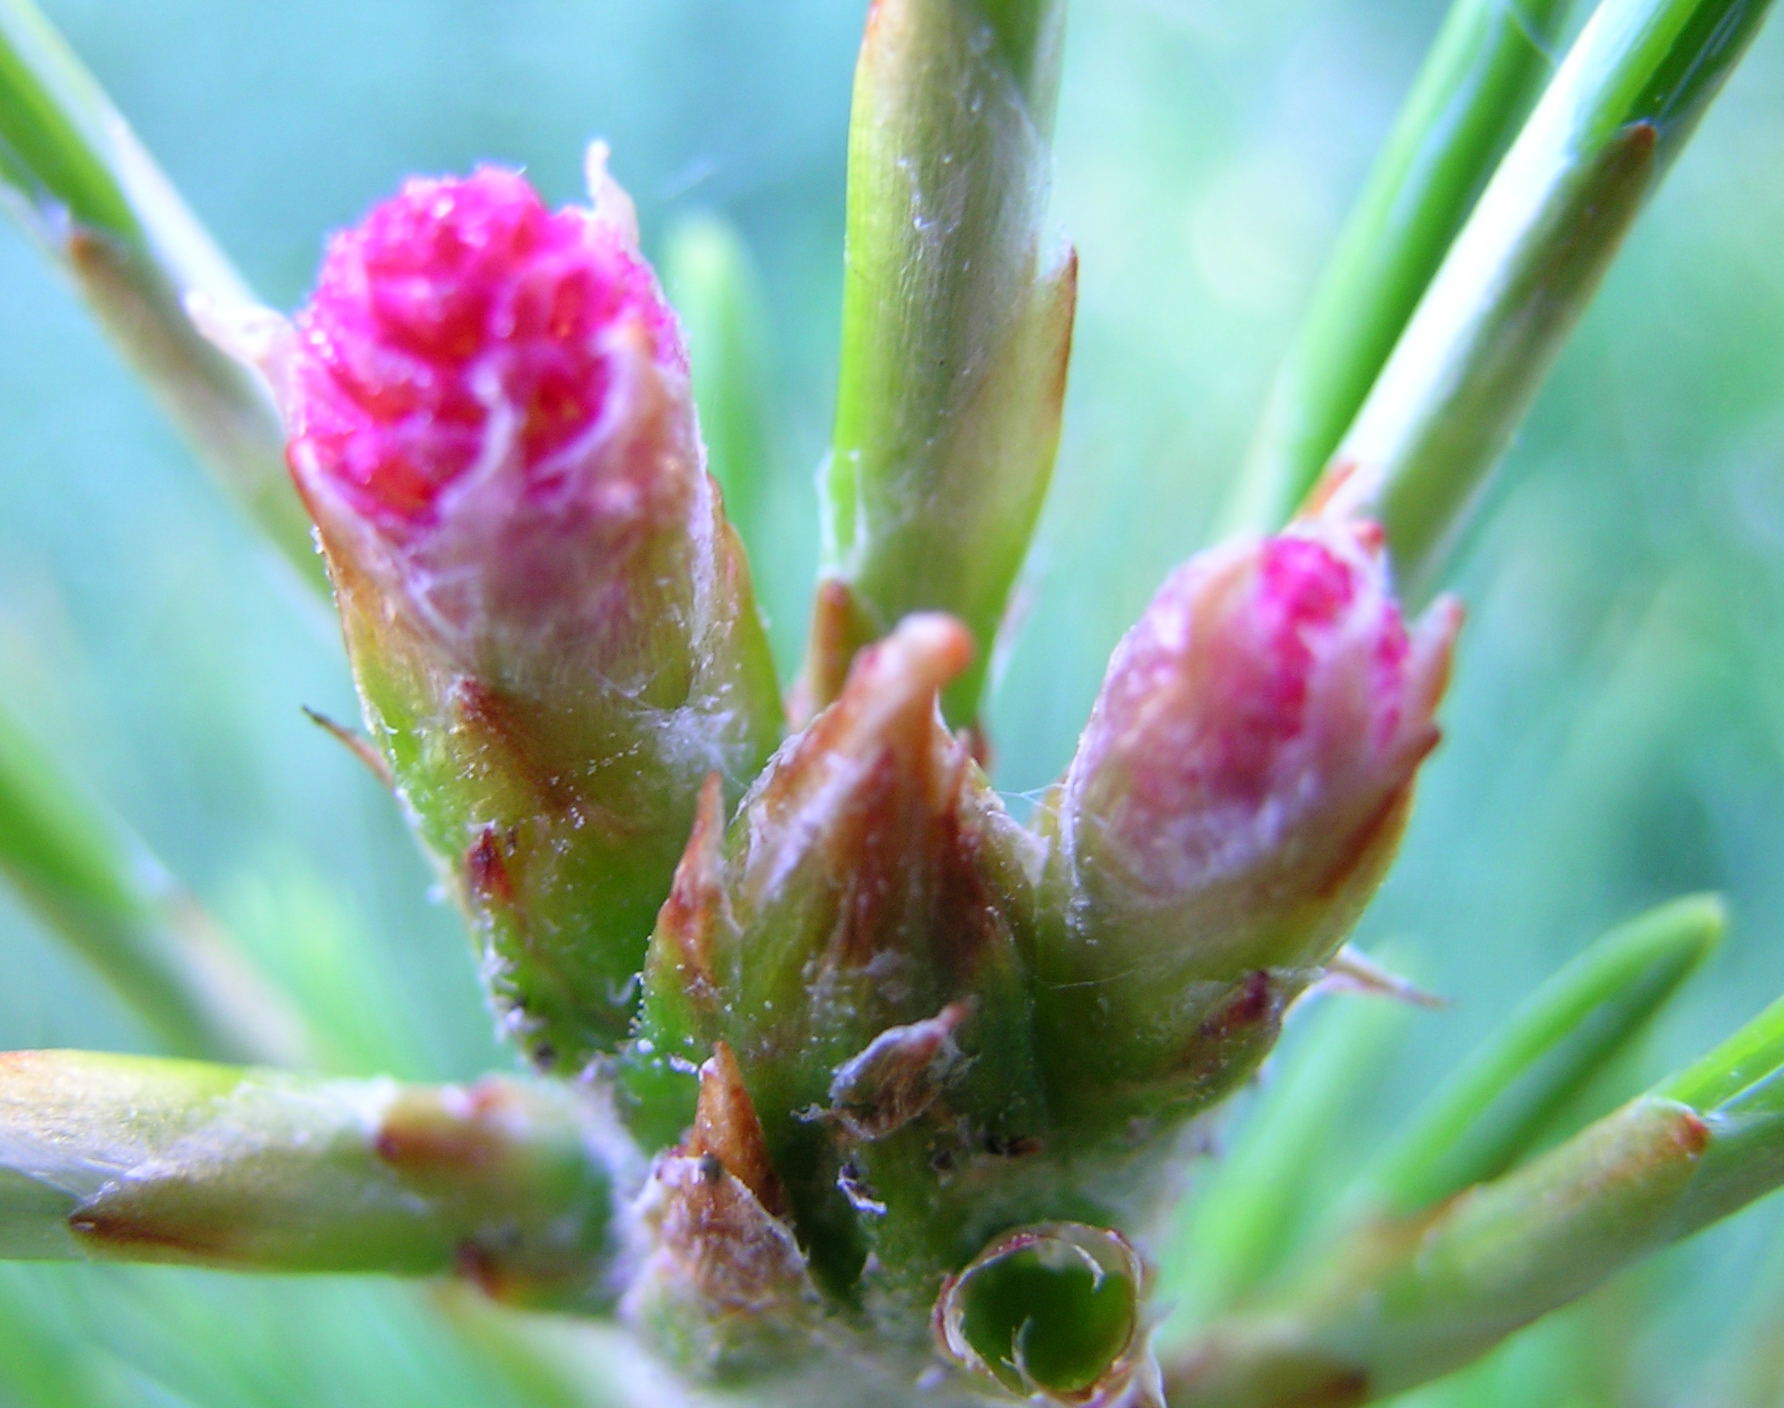 Женские шишки несколько раз меняют свой цвет: в период цветения (начало июня) они розовые. 